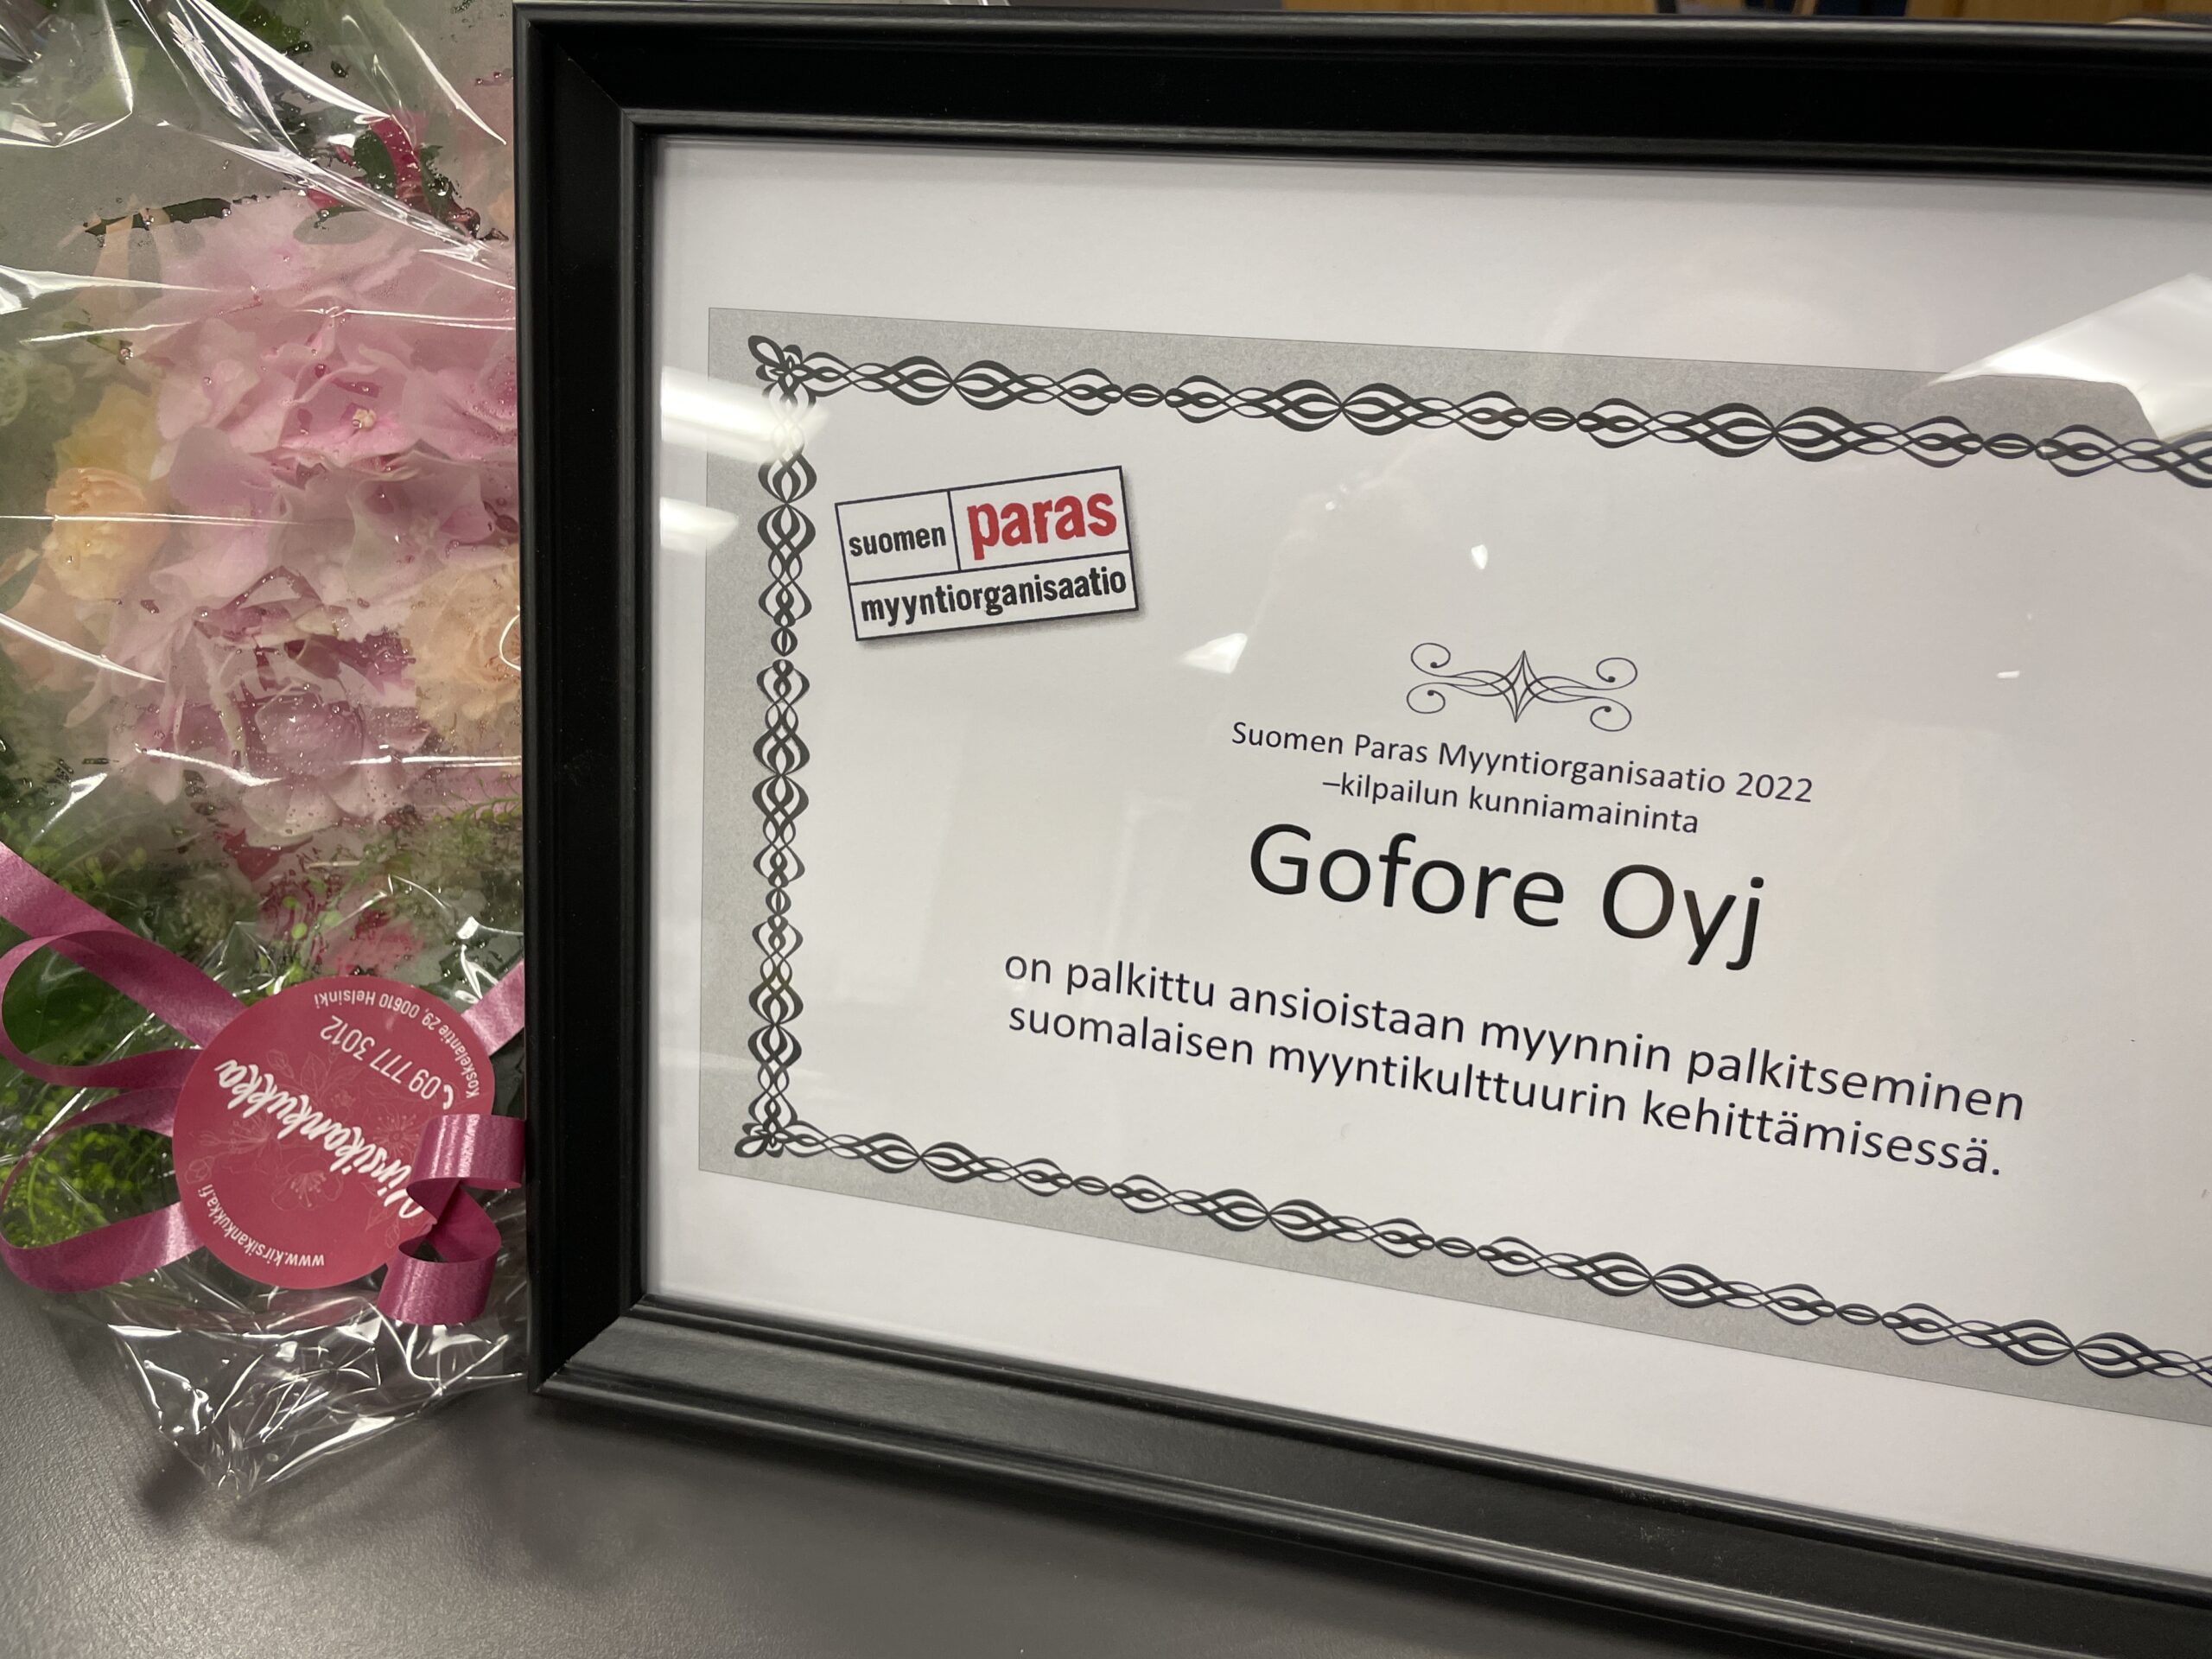 Kehystetty diplomi Suomen Paras Myyntiorganisaatio -kilpailun kunniamaininnasta